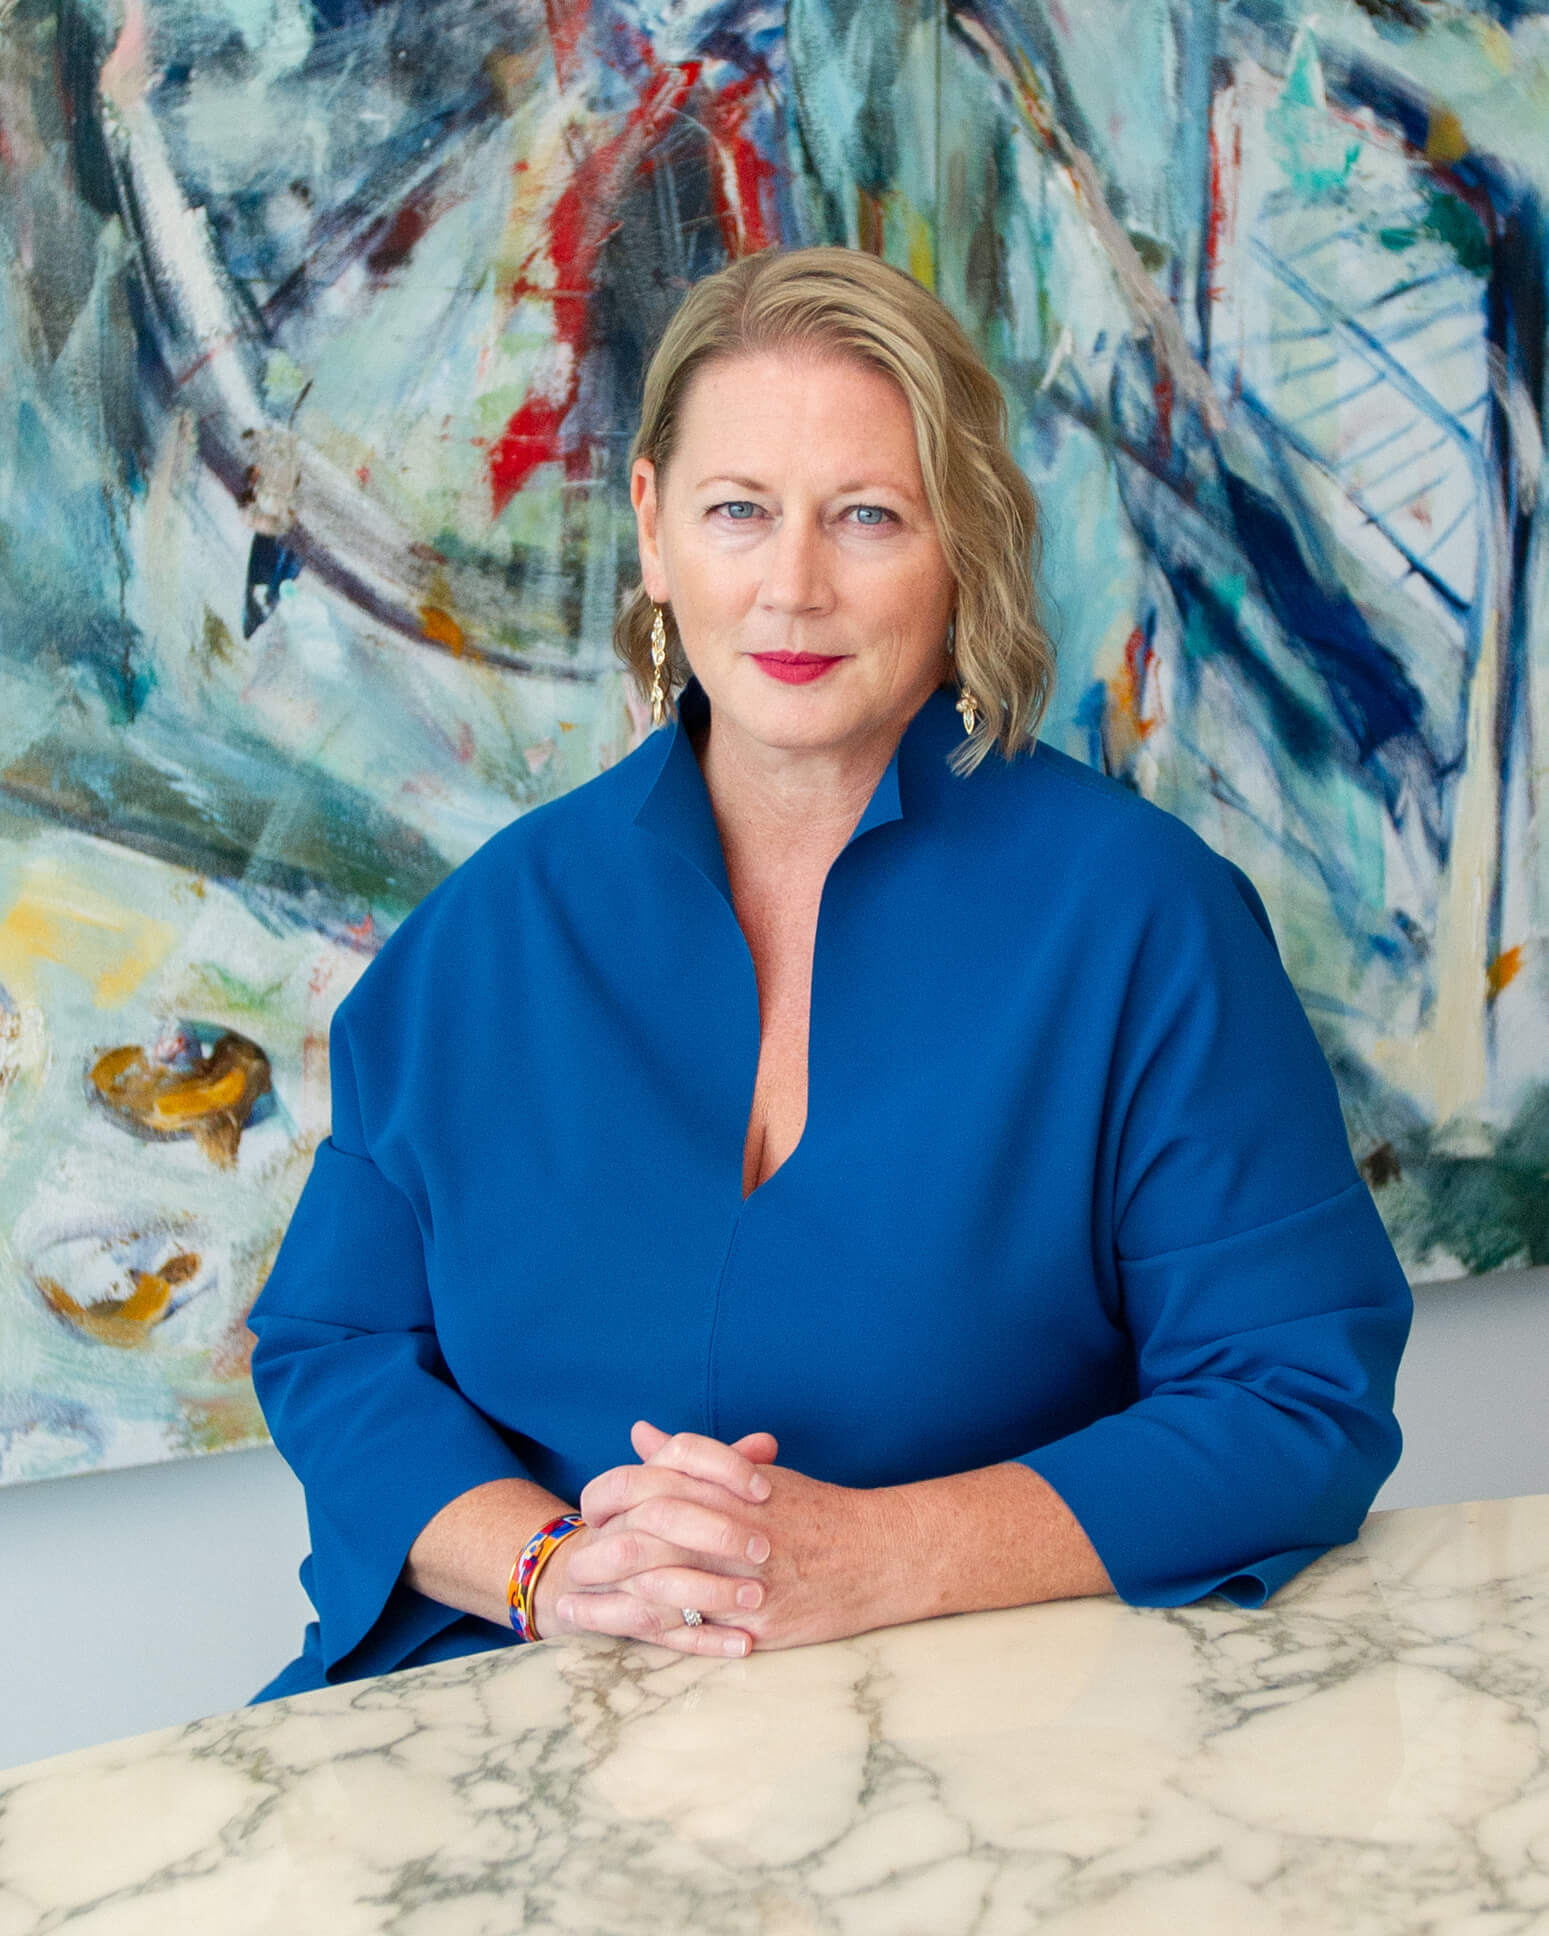 Plan de tête du PDG Virginia Devlin. Elle a des cheveux blonds aux épaules, des yeux bleus et porte un haut bleu. Elle est assise devant un mur aux motifs vifs.